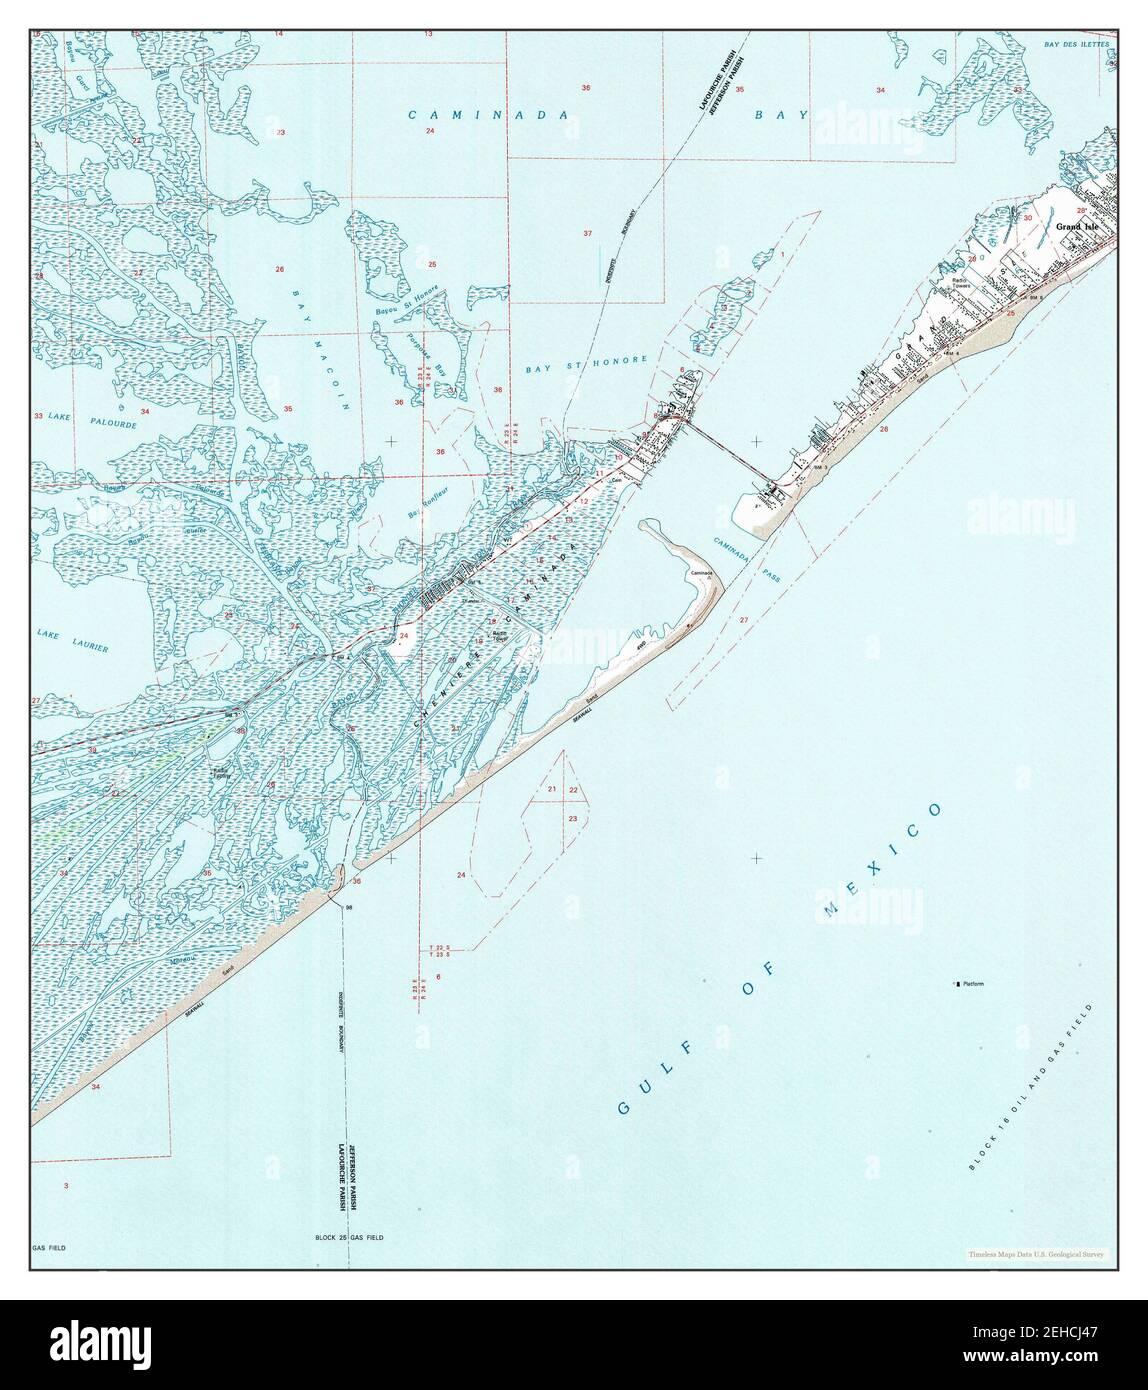 Caminada Pass, Louisiana, Karte 1994, 1:24000, Vereinigte Staaten von Amerika von Timeless Maps, Daten U.S. Geological Survey Stockfoto